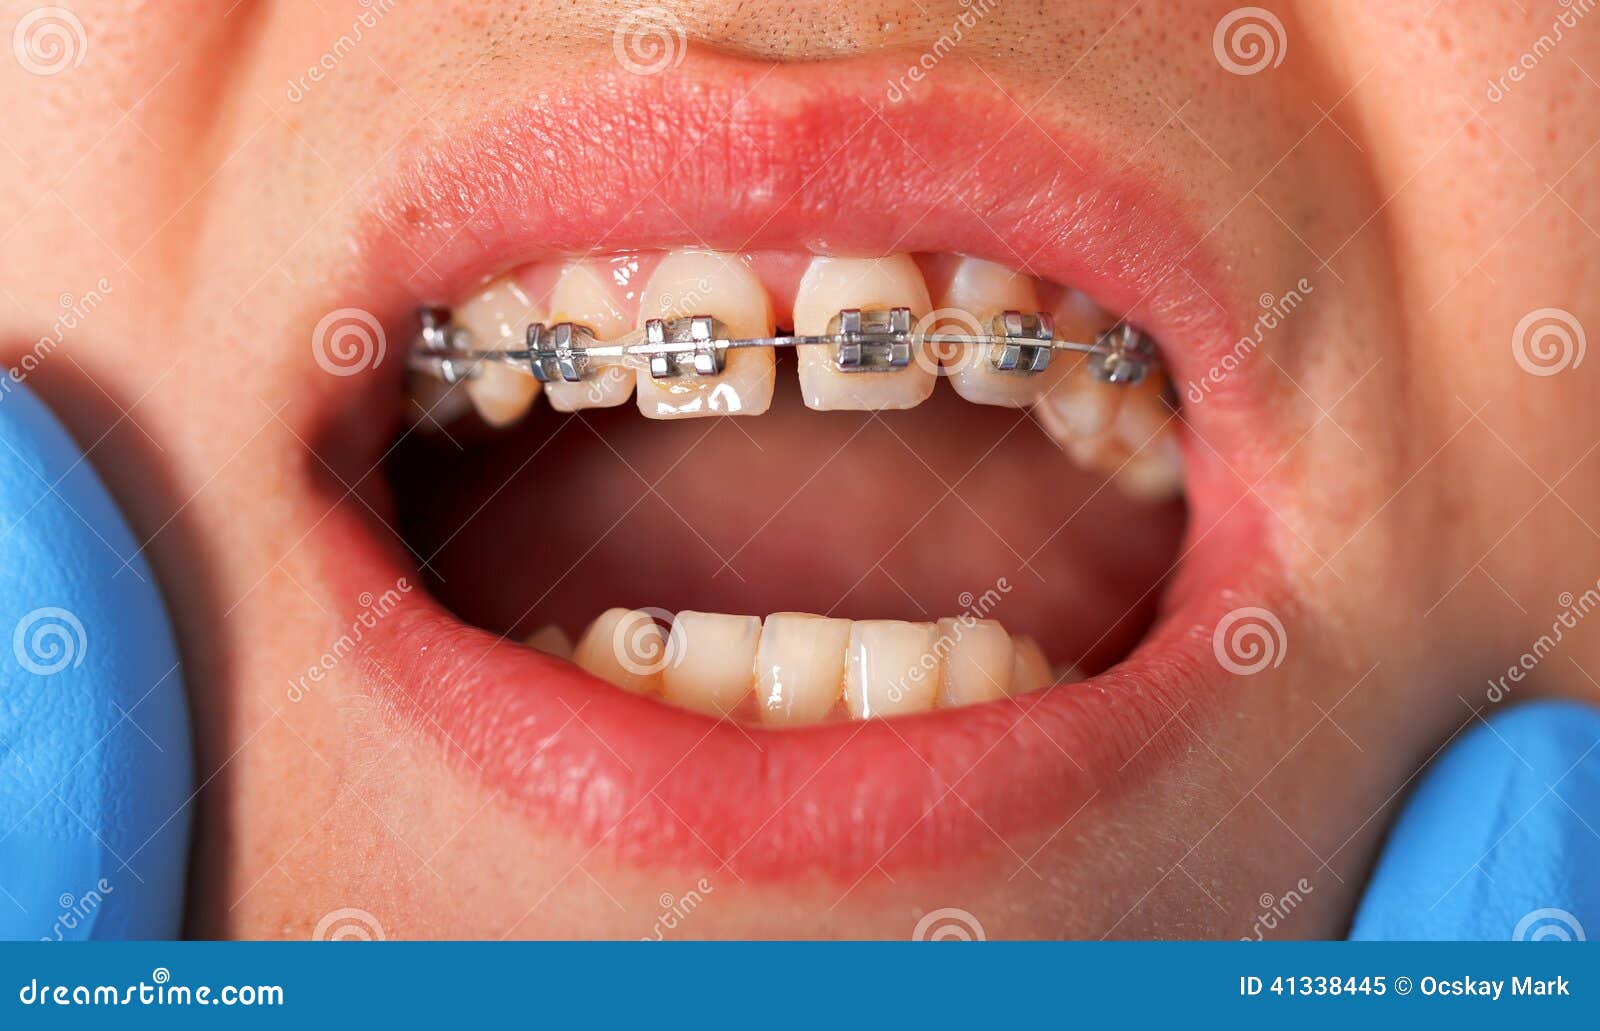 στηρίγματα οδοντικά. Κλείστε επάνω τα οδοντικά στηρίγματα σε μια οδοντική κλινική